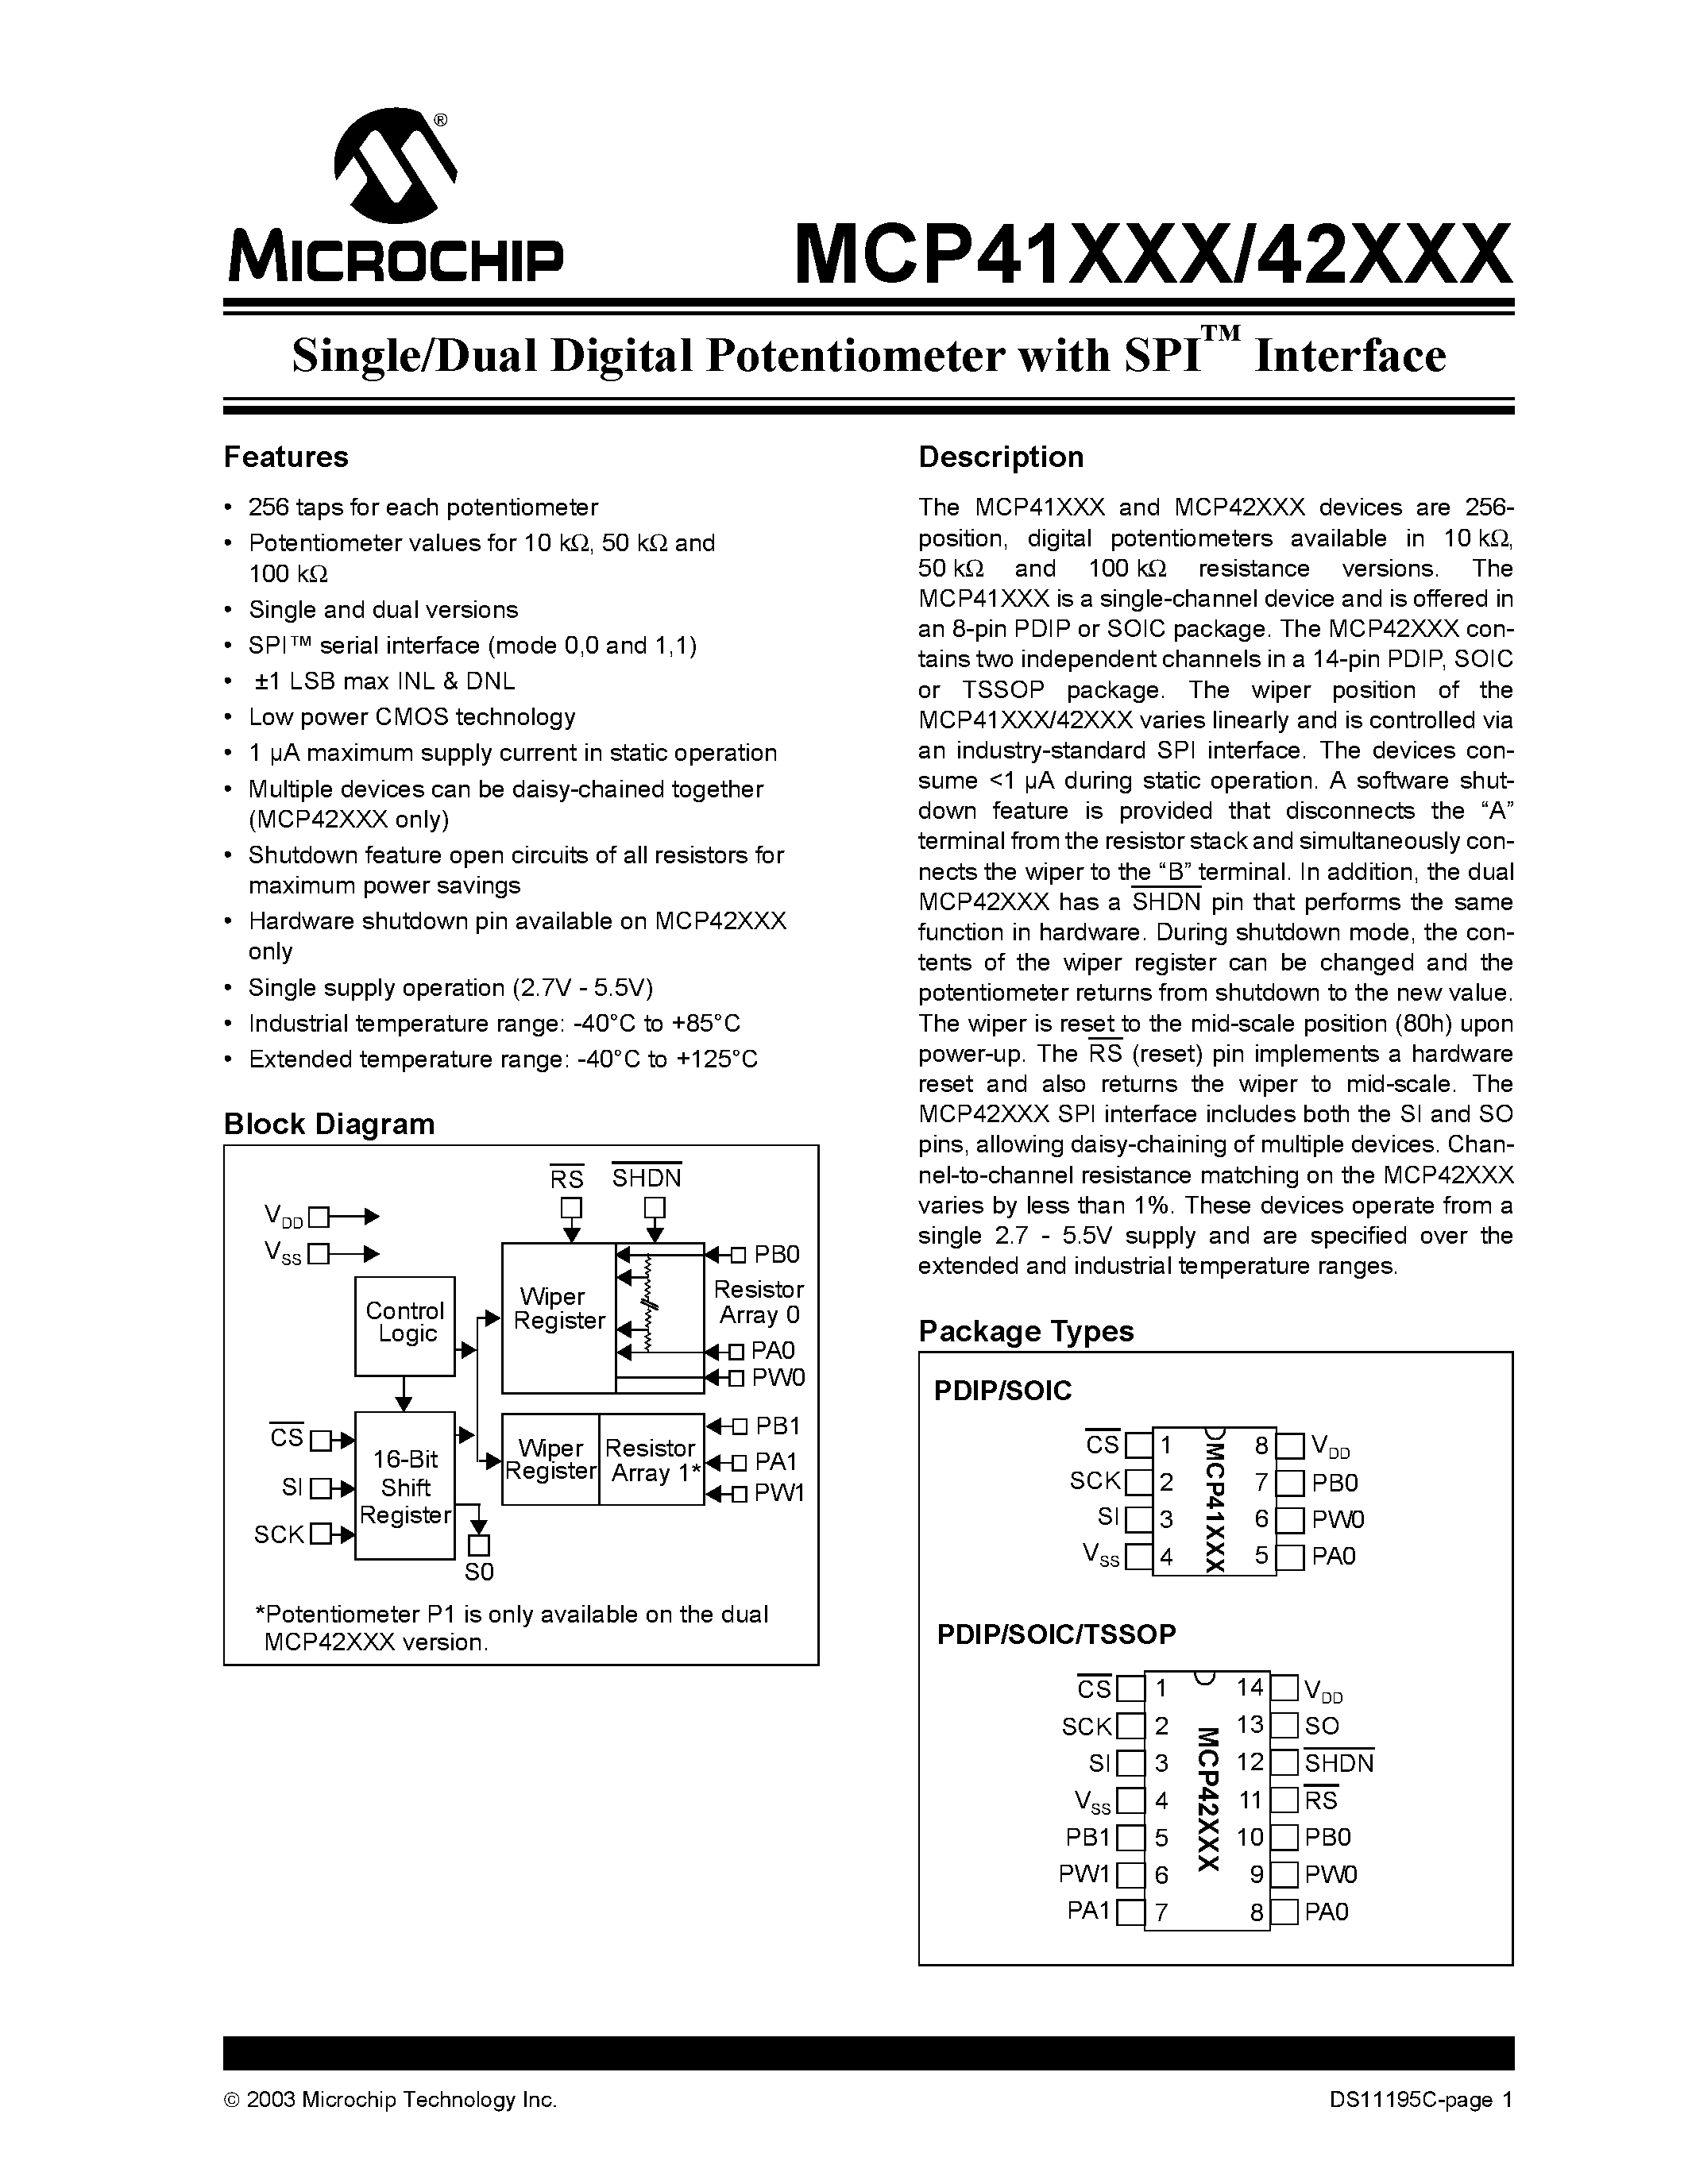 Даташит MCP41010-E/P - Single/Dual Digital Potentiometer with SPI Interface страница 1